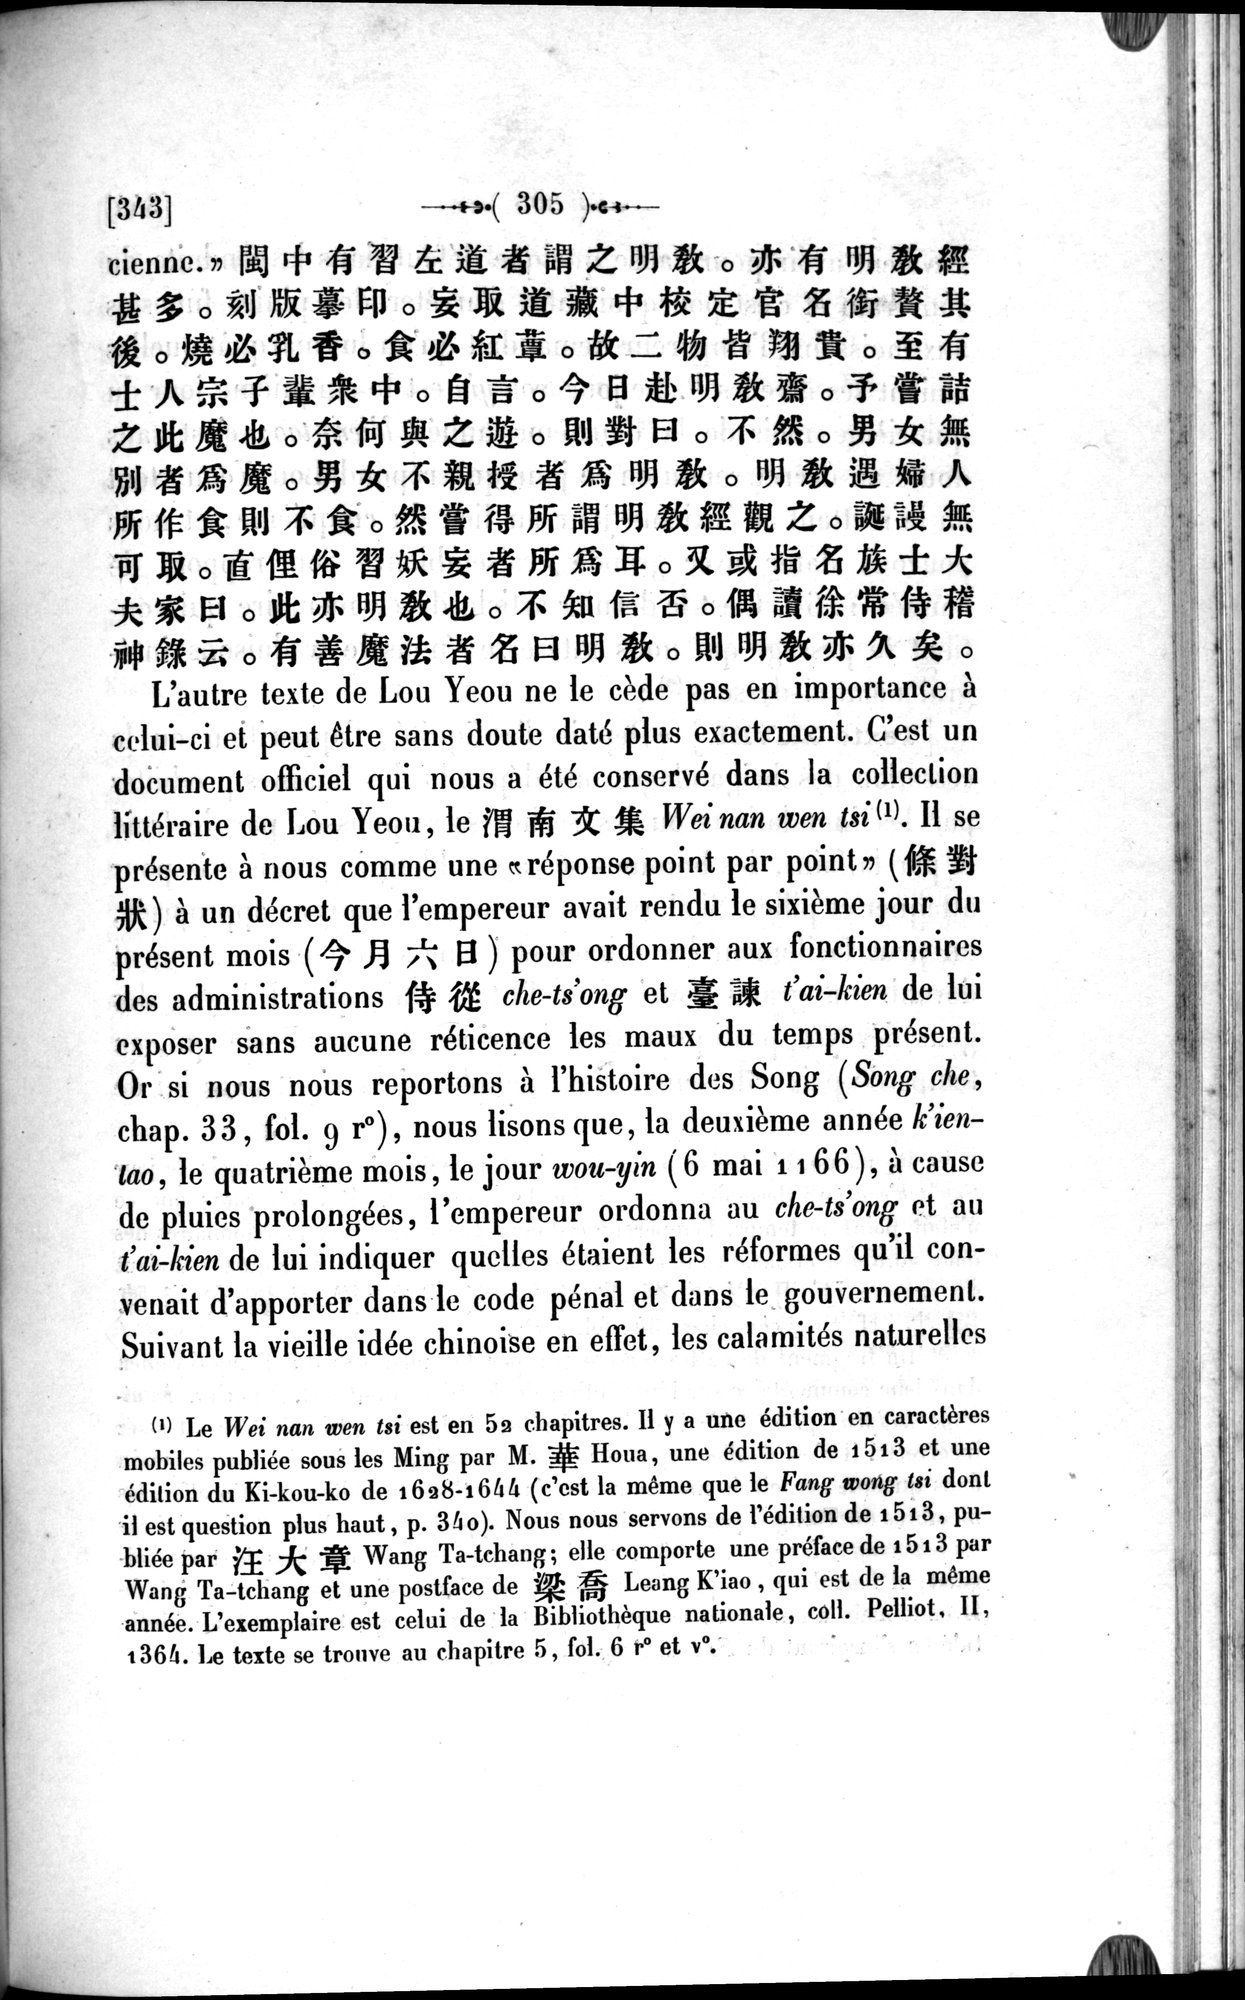 Un traité manichéen retrouvé en Chine : vol.1 / Page 315 (Grayscale High Resolution Image)